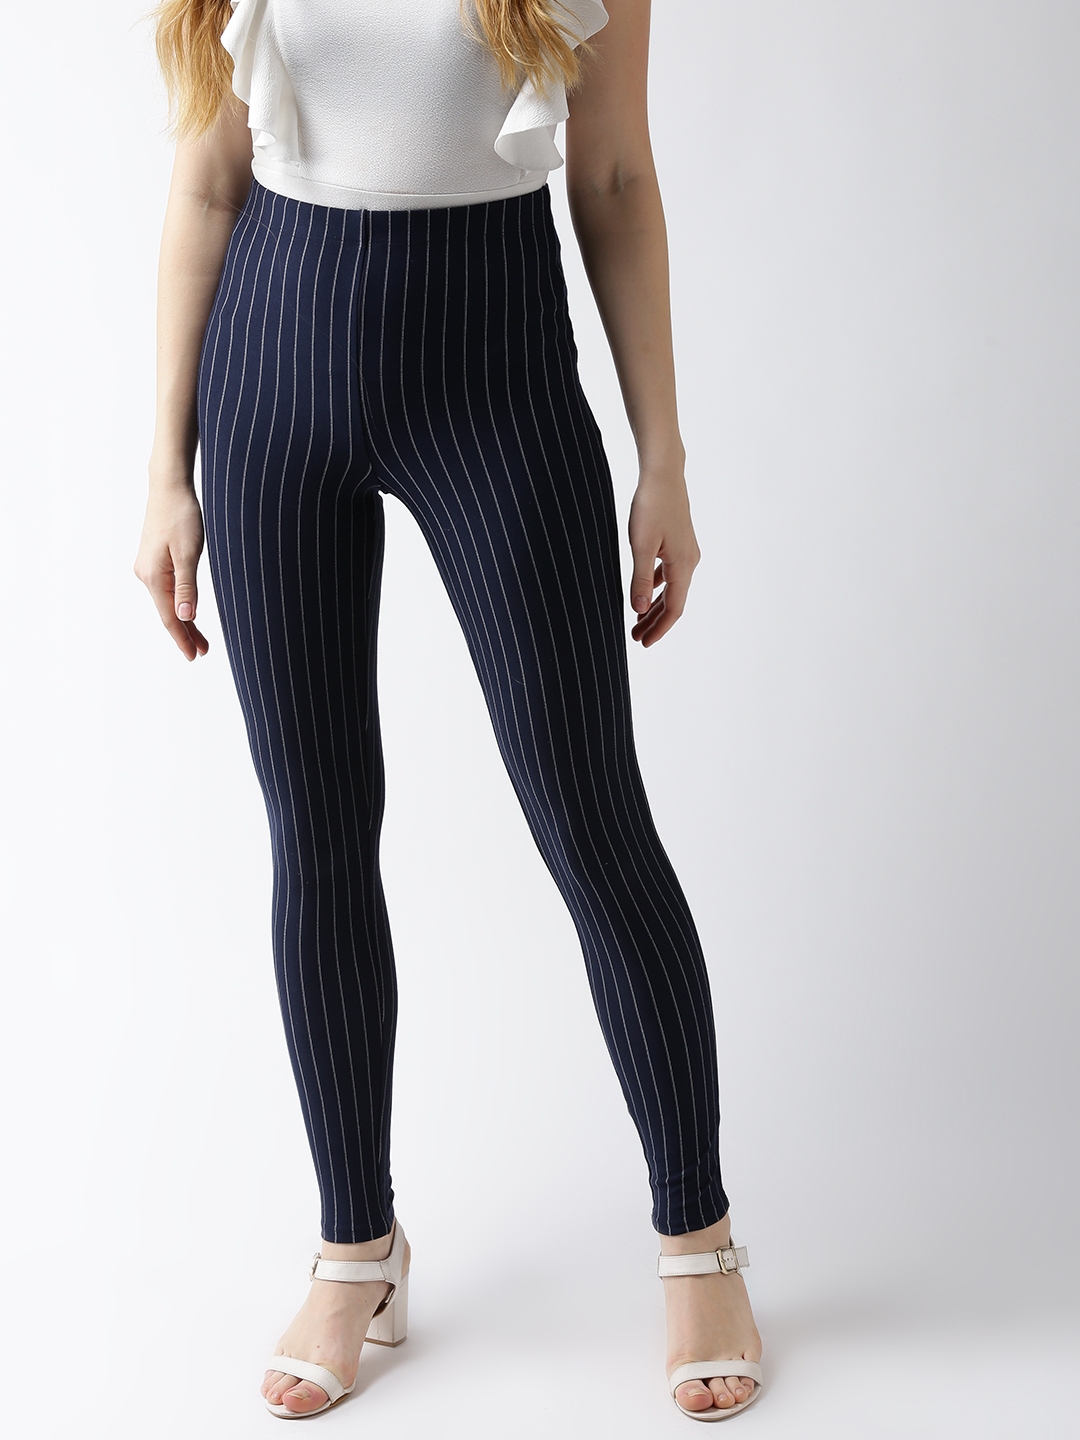 Buy FOREVER 21 Women Navy Blue & White Striped Leggings - Leggings for ...